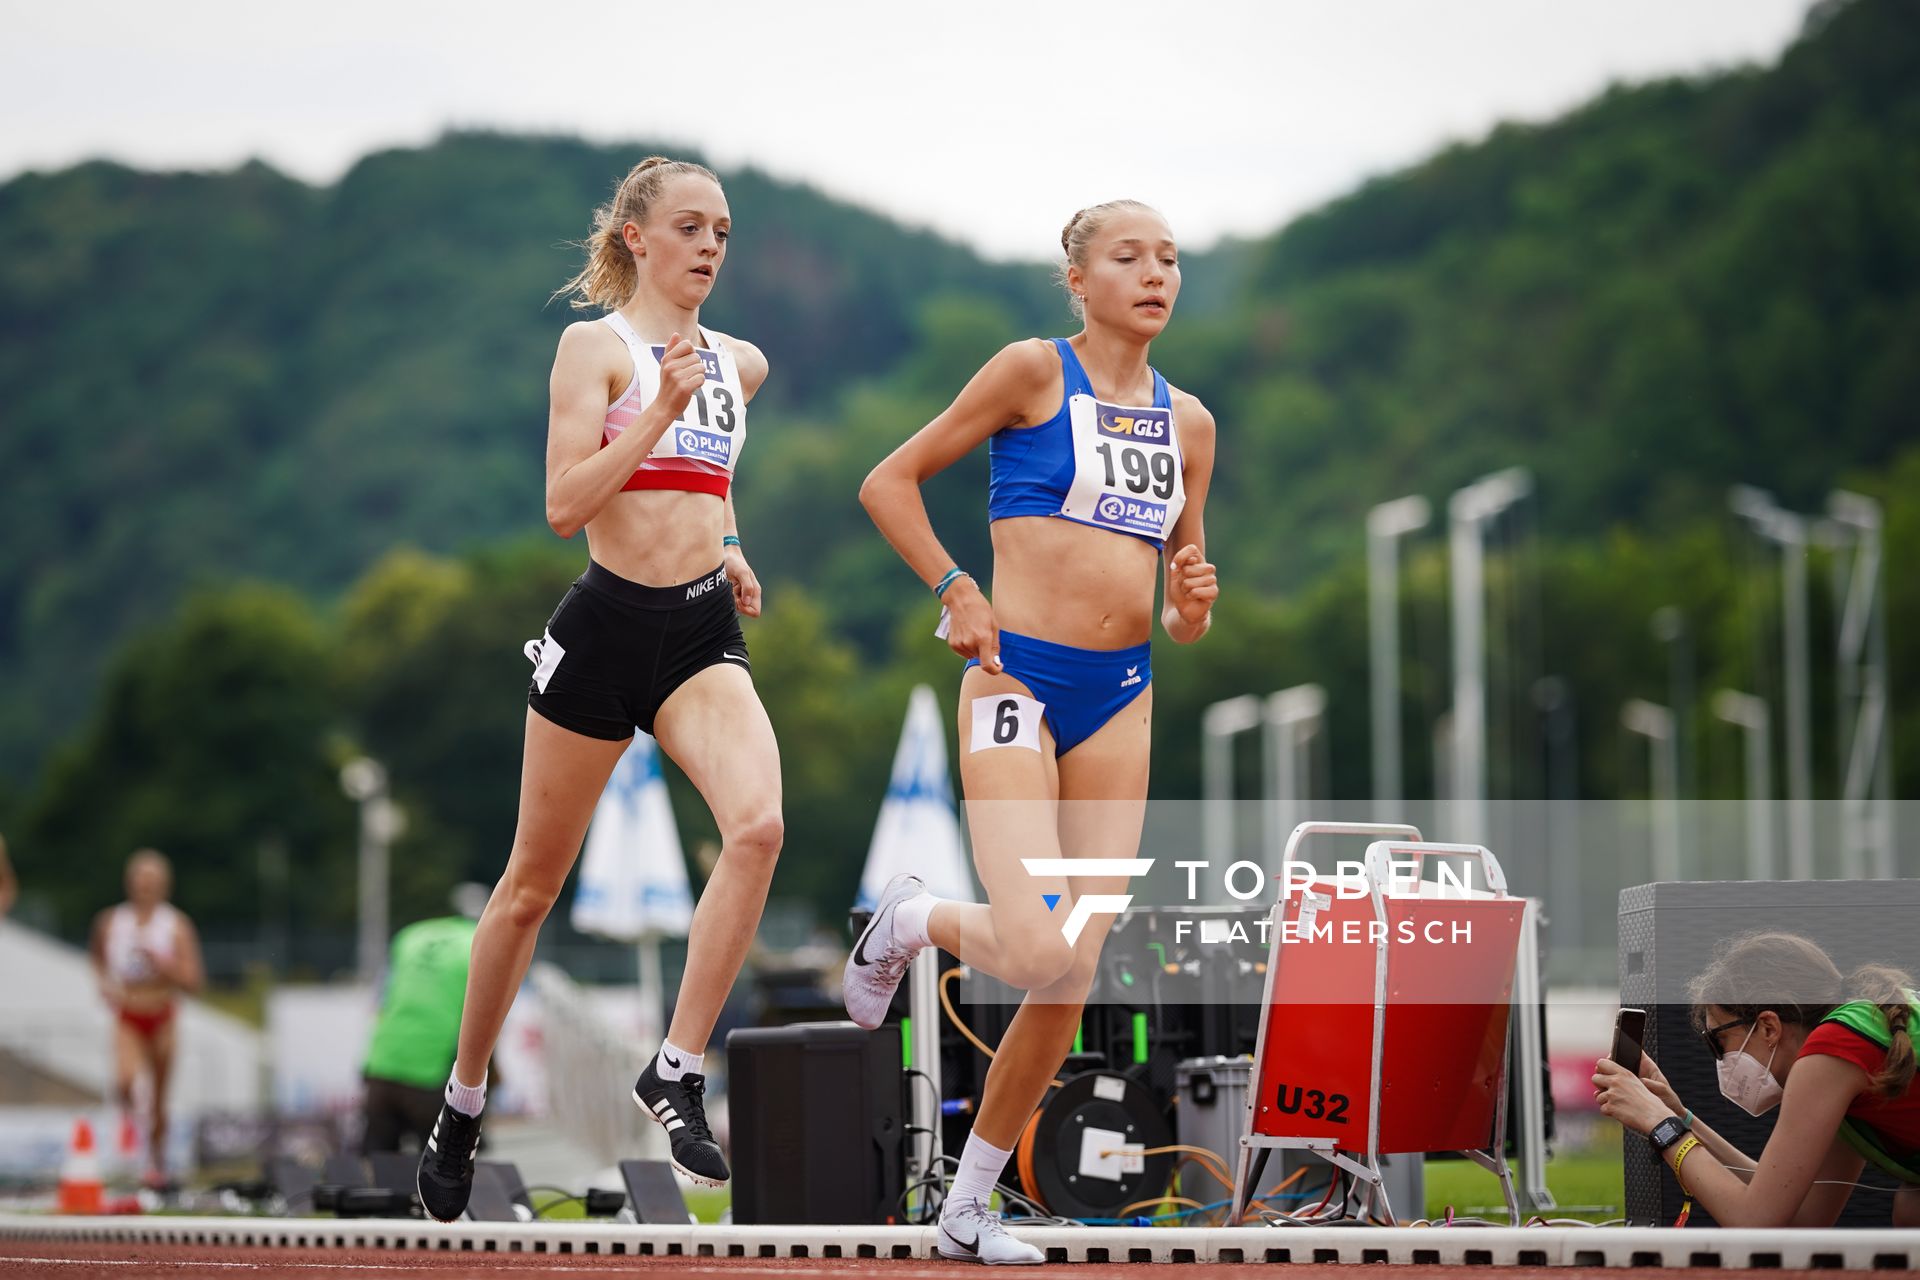 Nele Heymann (TuS Haren) im 1500m Finale am 27.06.2021 waehrend den deutschen U23 Leichtathletik-Meisterschaften 2021 im Stadion Oberwerth in Koblenz